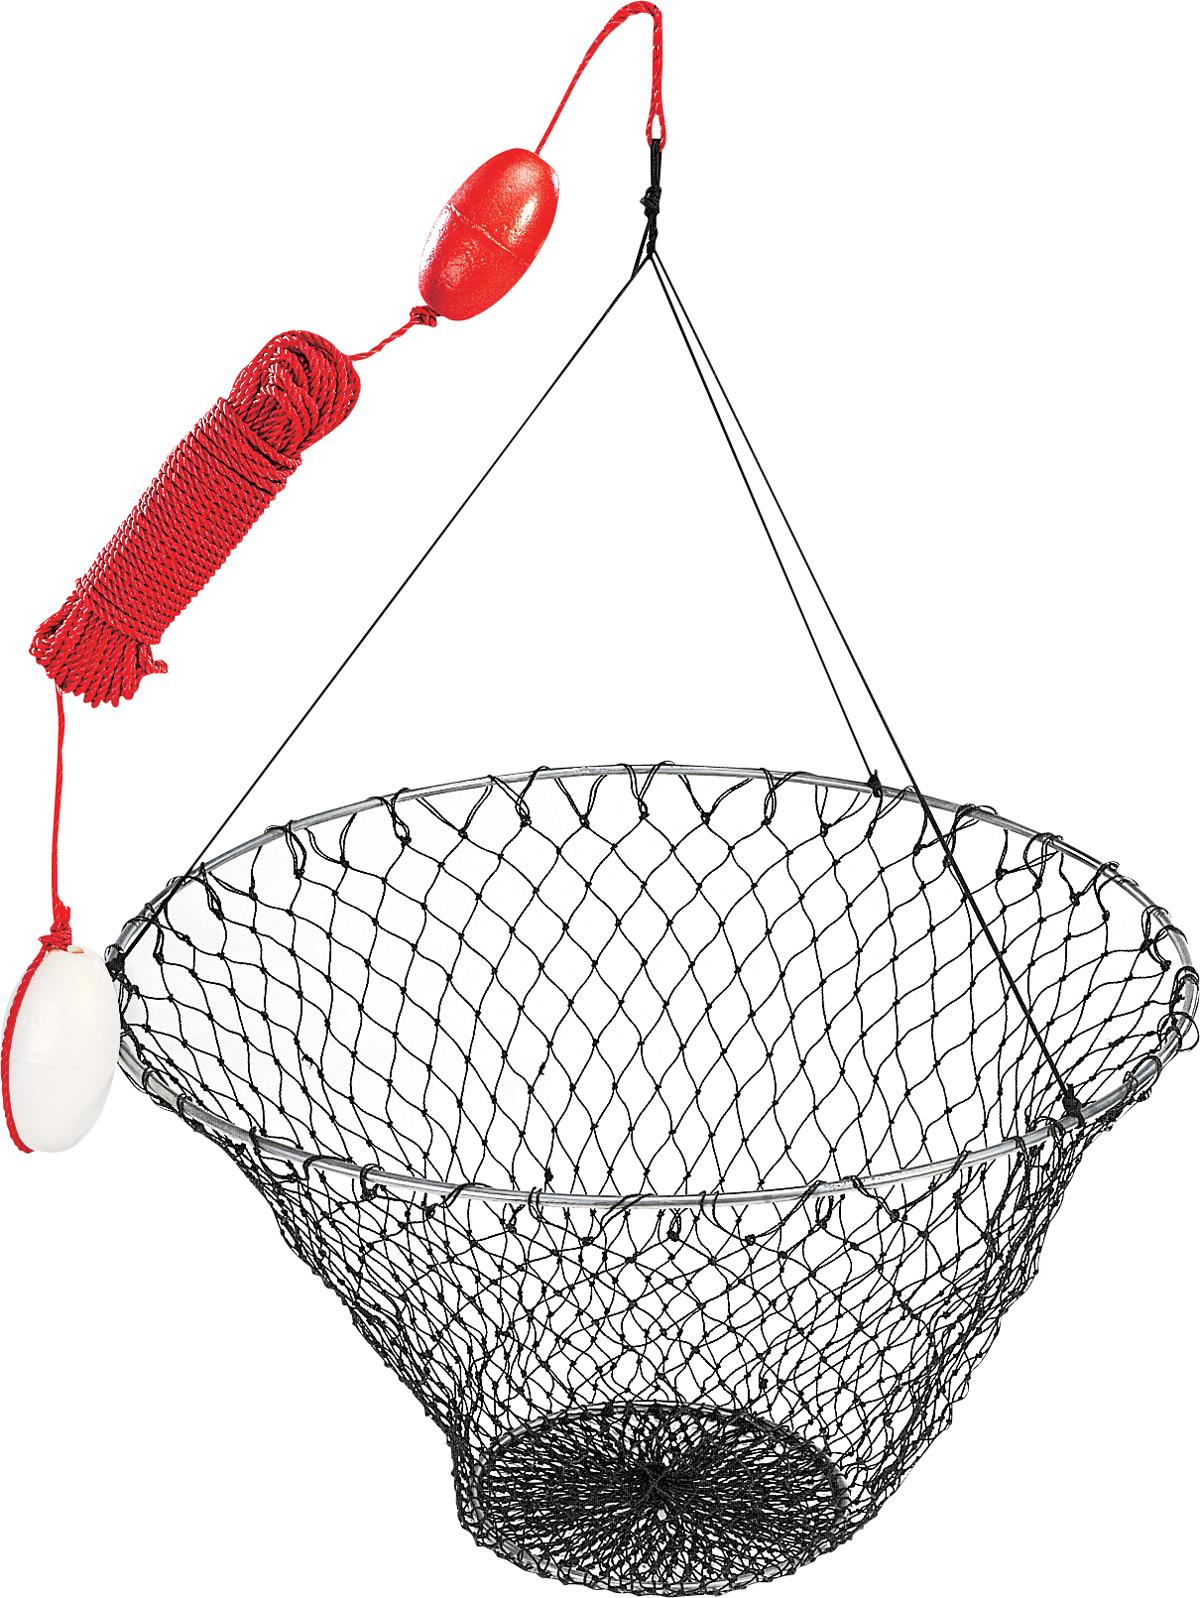 The BallyHoop - Aluminum Collapsible Hoop Net  